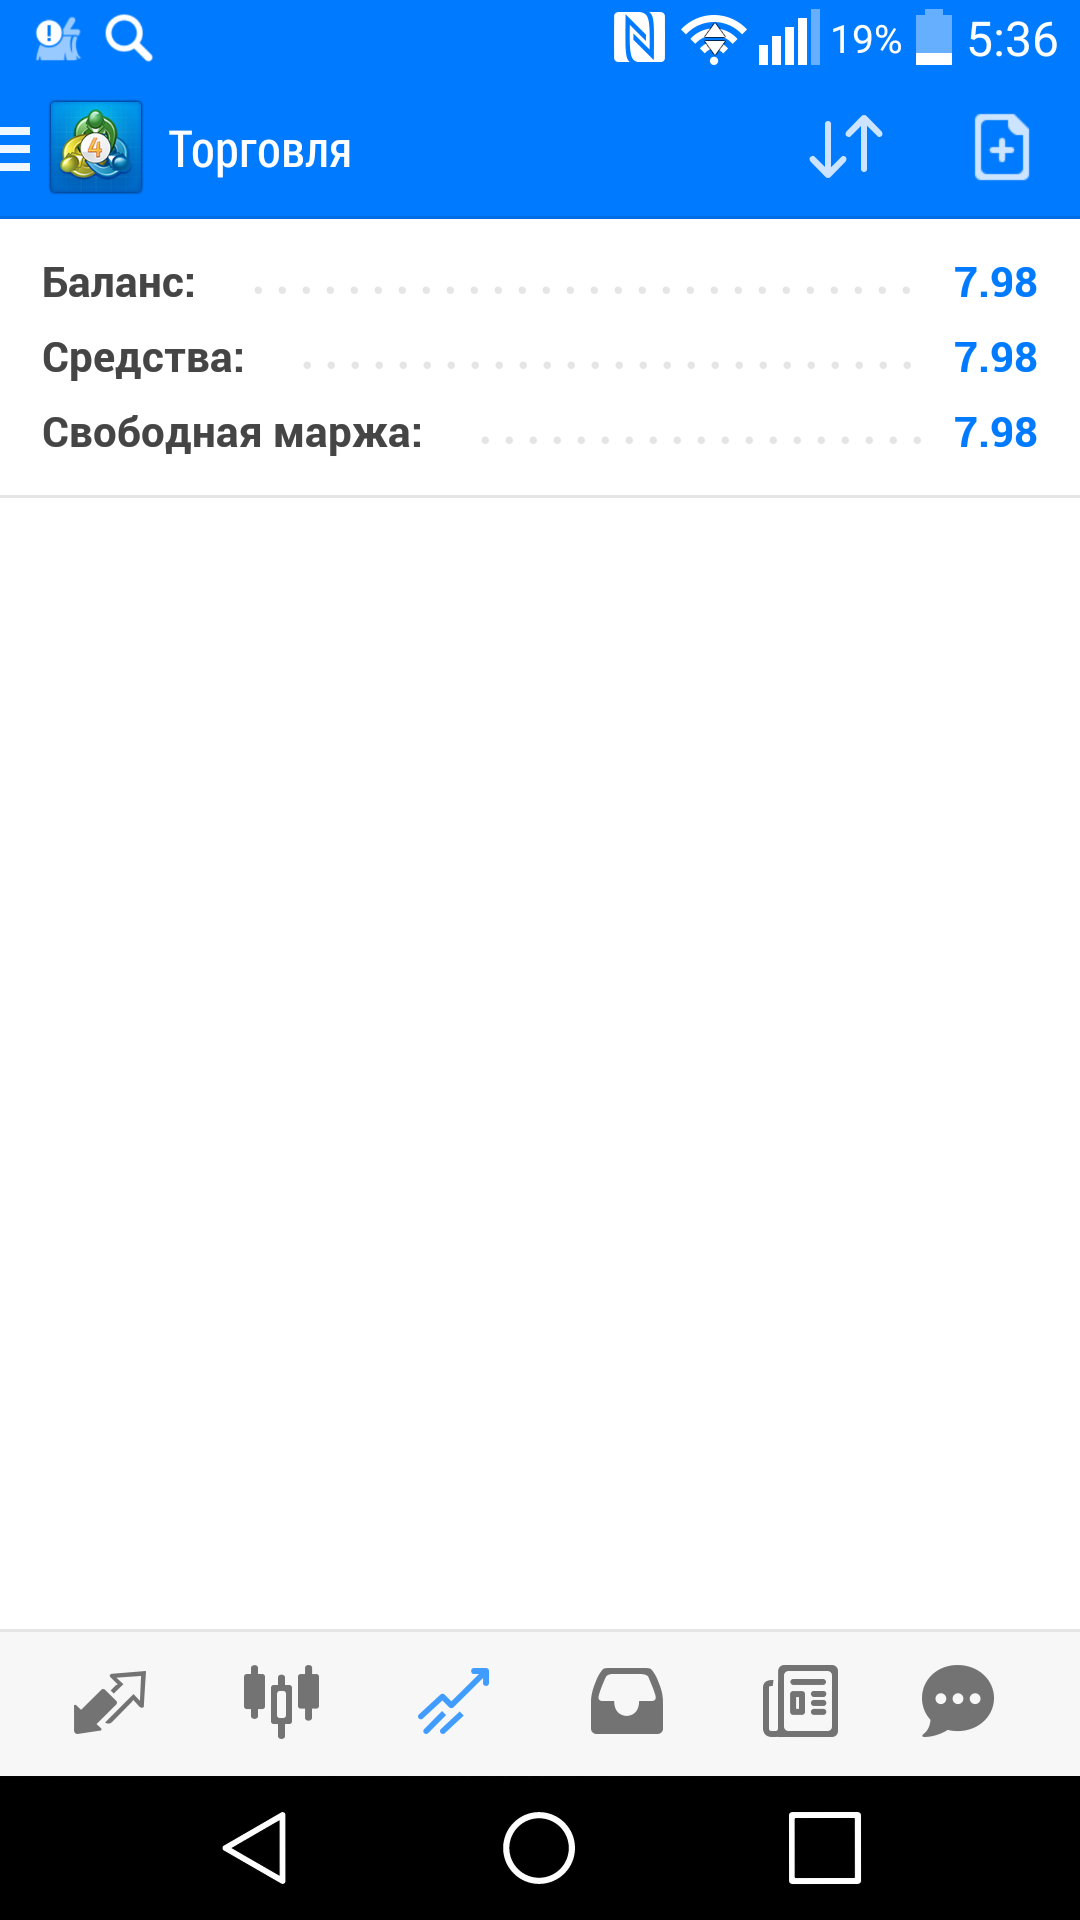 Саяногорск Инфо - screenshot_2019-04-25-05-36-47.png, Скачано: 155